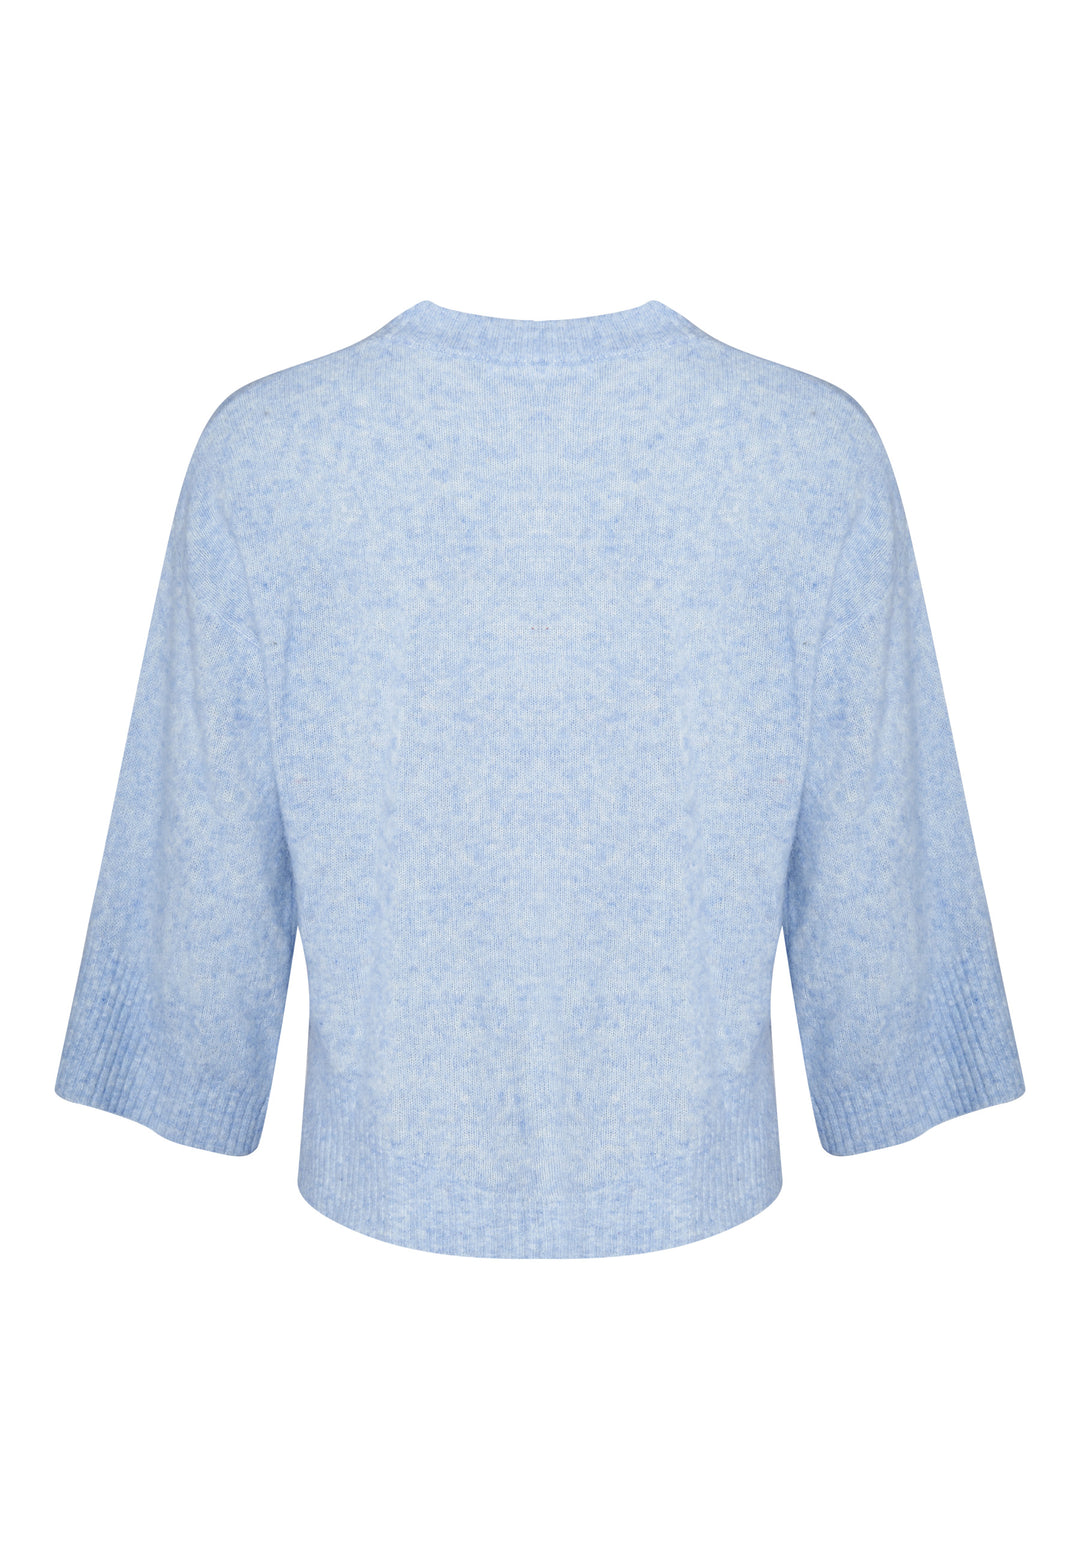 Lind LiAgusta Knit Pullover 5002 Light Blue Melange